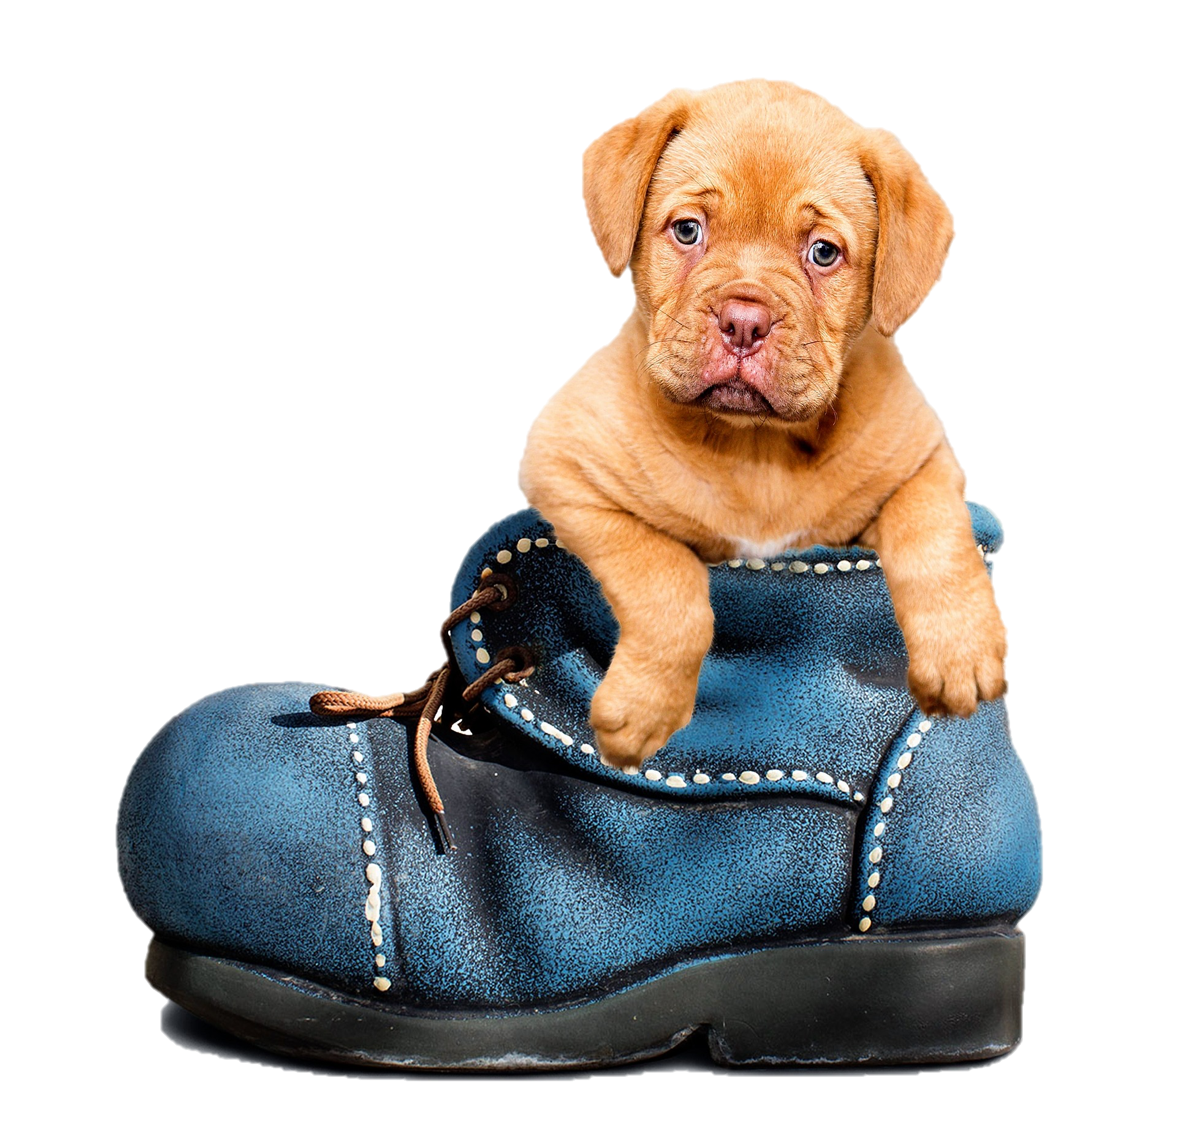 cute puppy in a boot